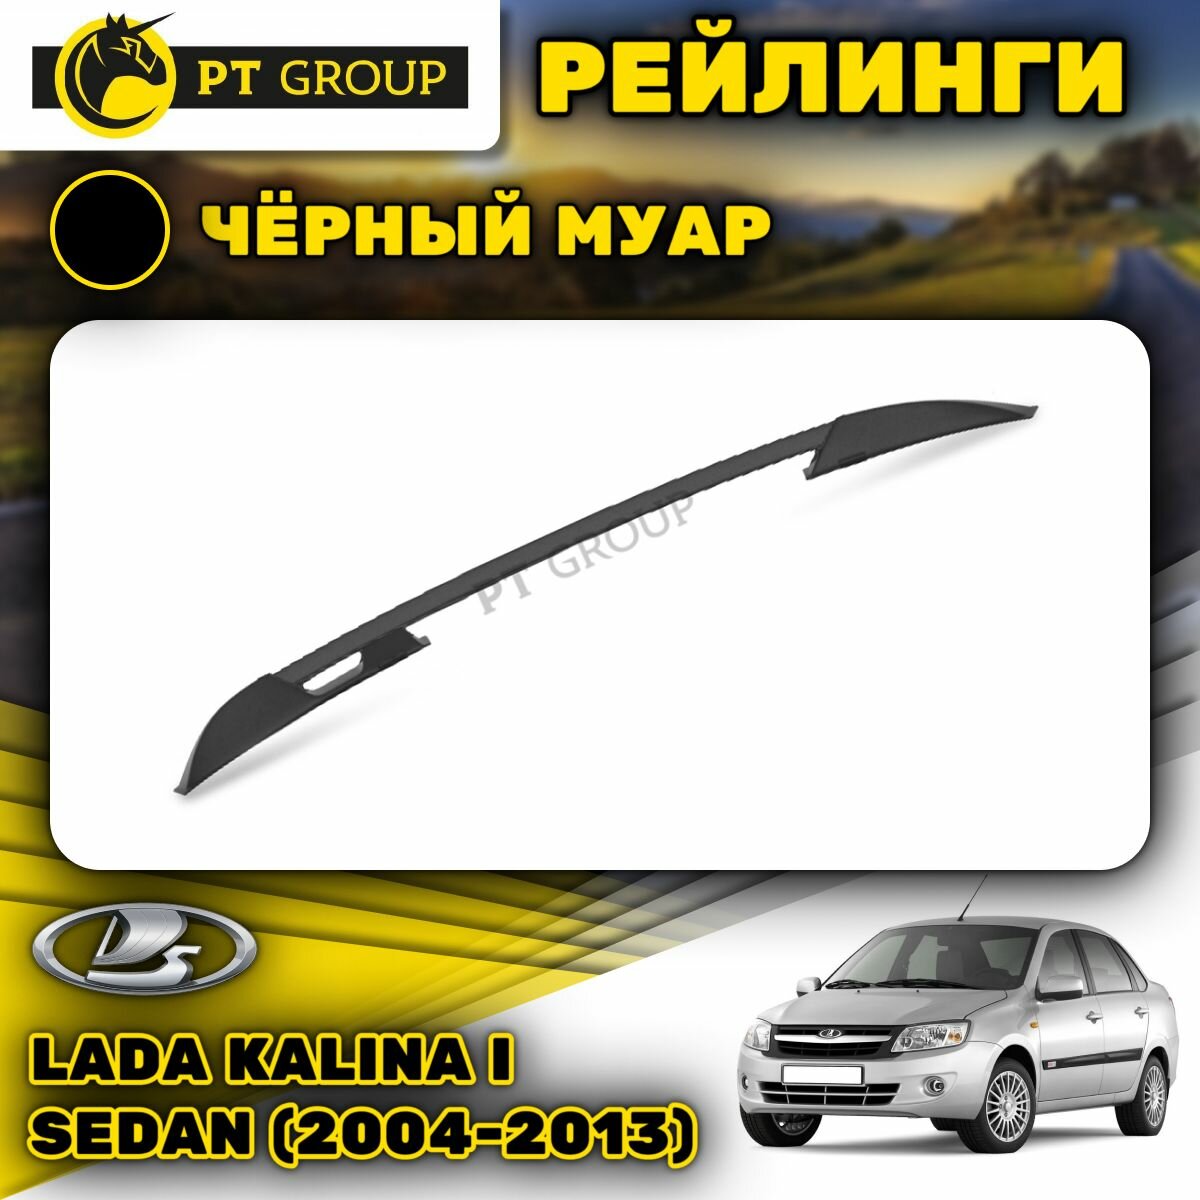 Рейлинги ПТ Групп "Усиленный" для Lada Kalina I Sedan (2004-2013) (Лада Калина) черный муар LGR551502